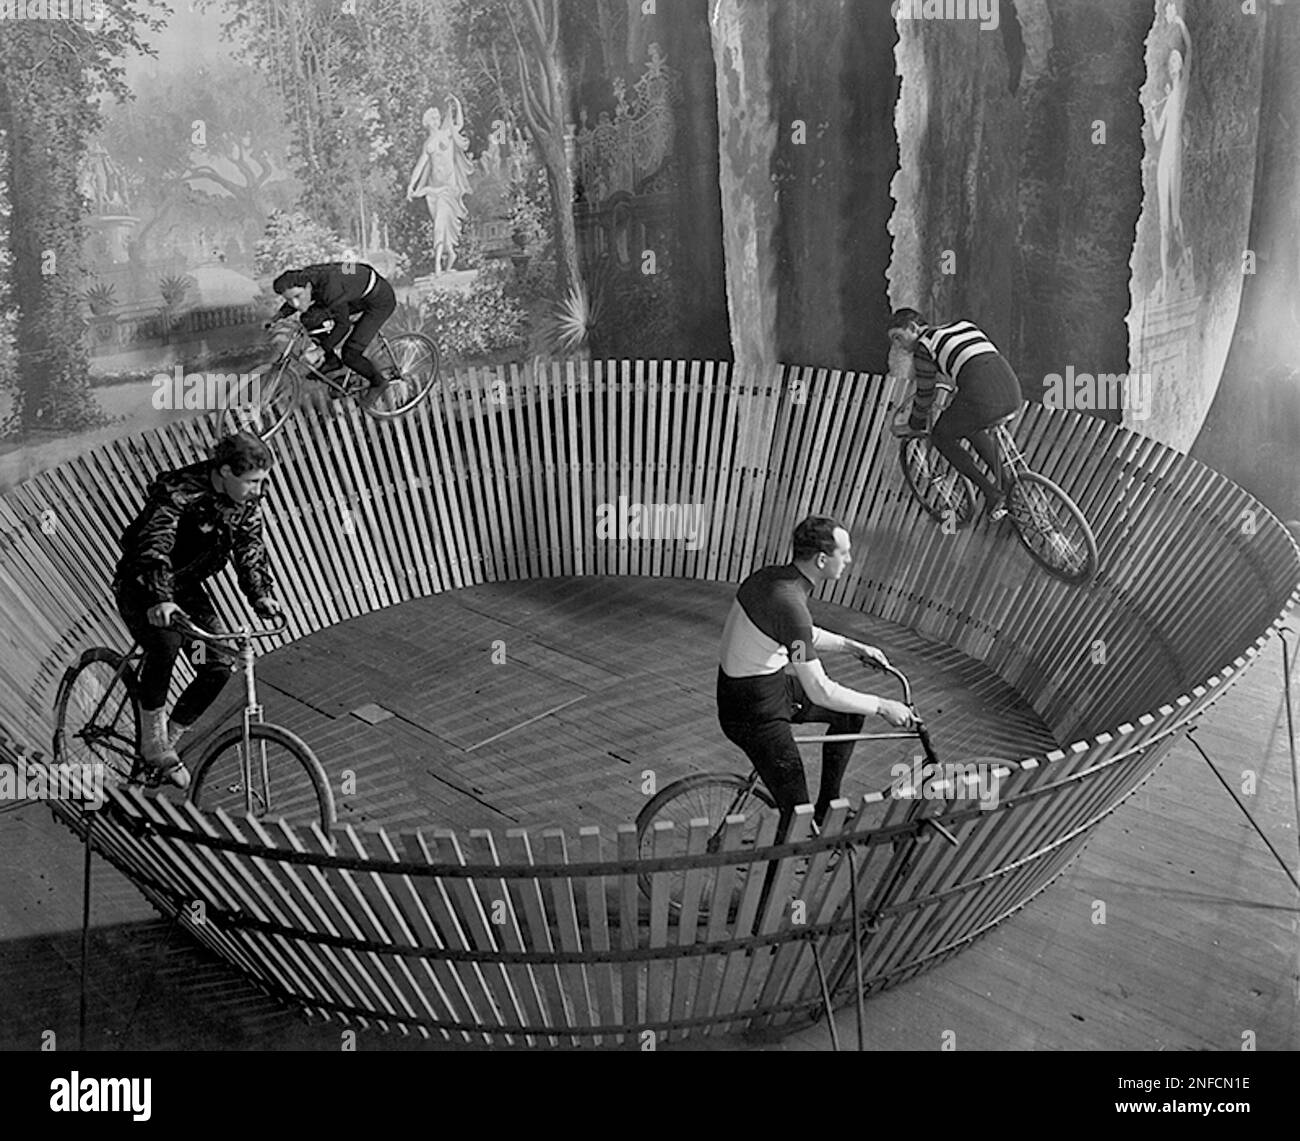 Aller nulle part vite - la force centrifuge maintient ces cyclistes du diable debout - 1901 Banque D'Images